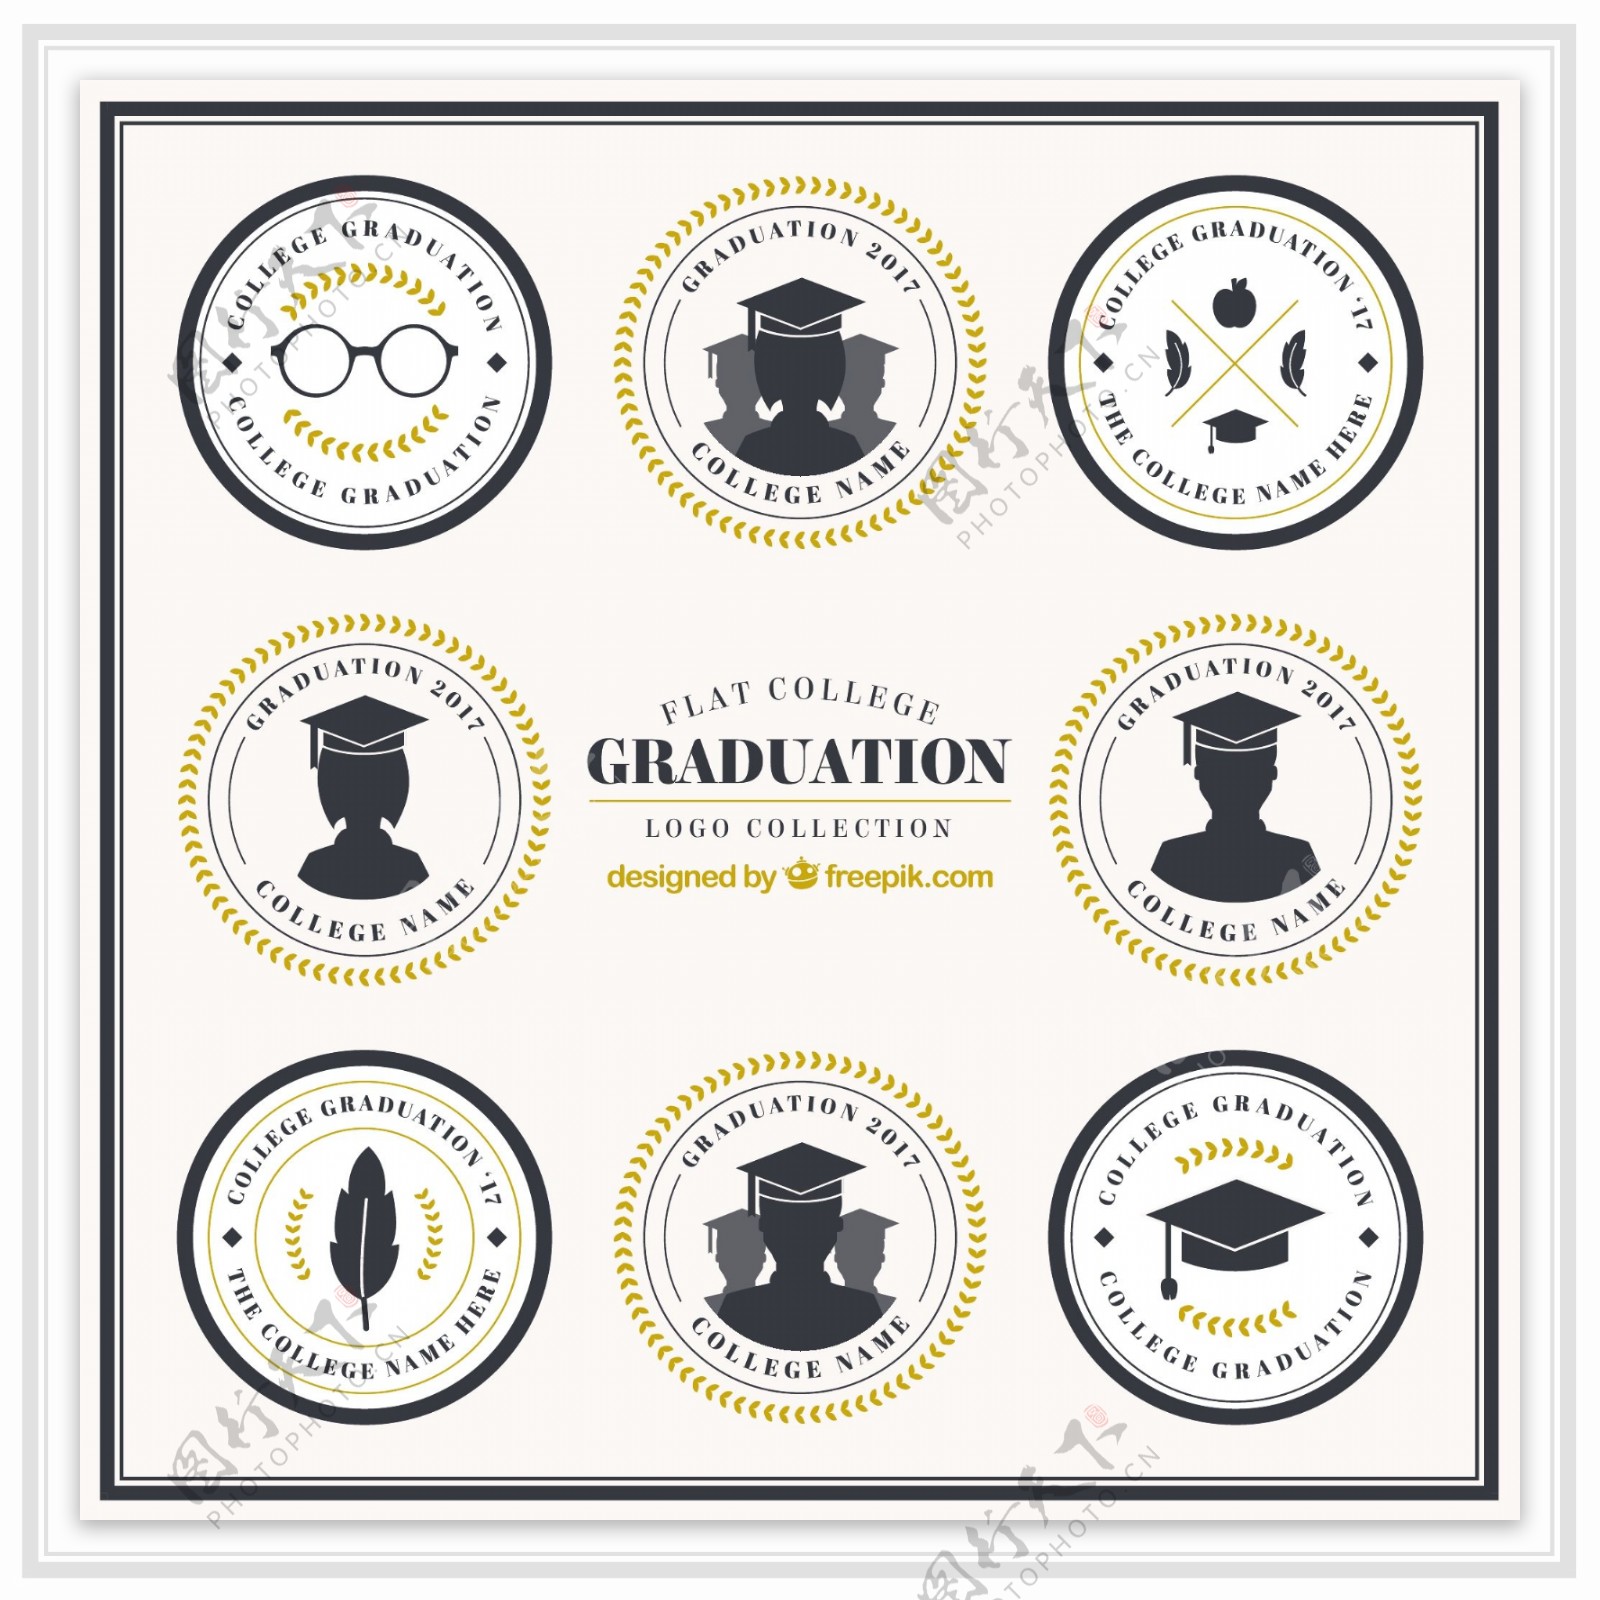 毕业设计的八个标志